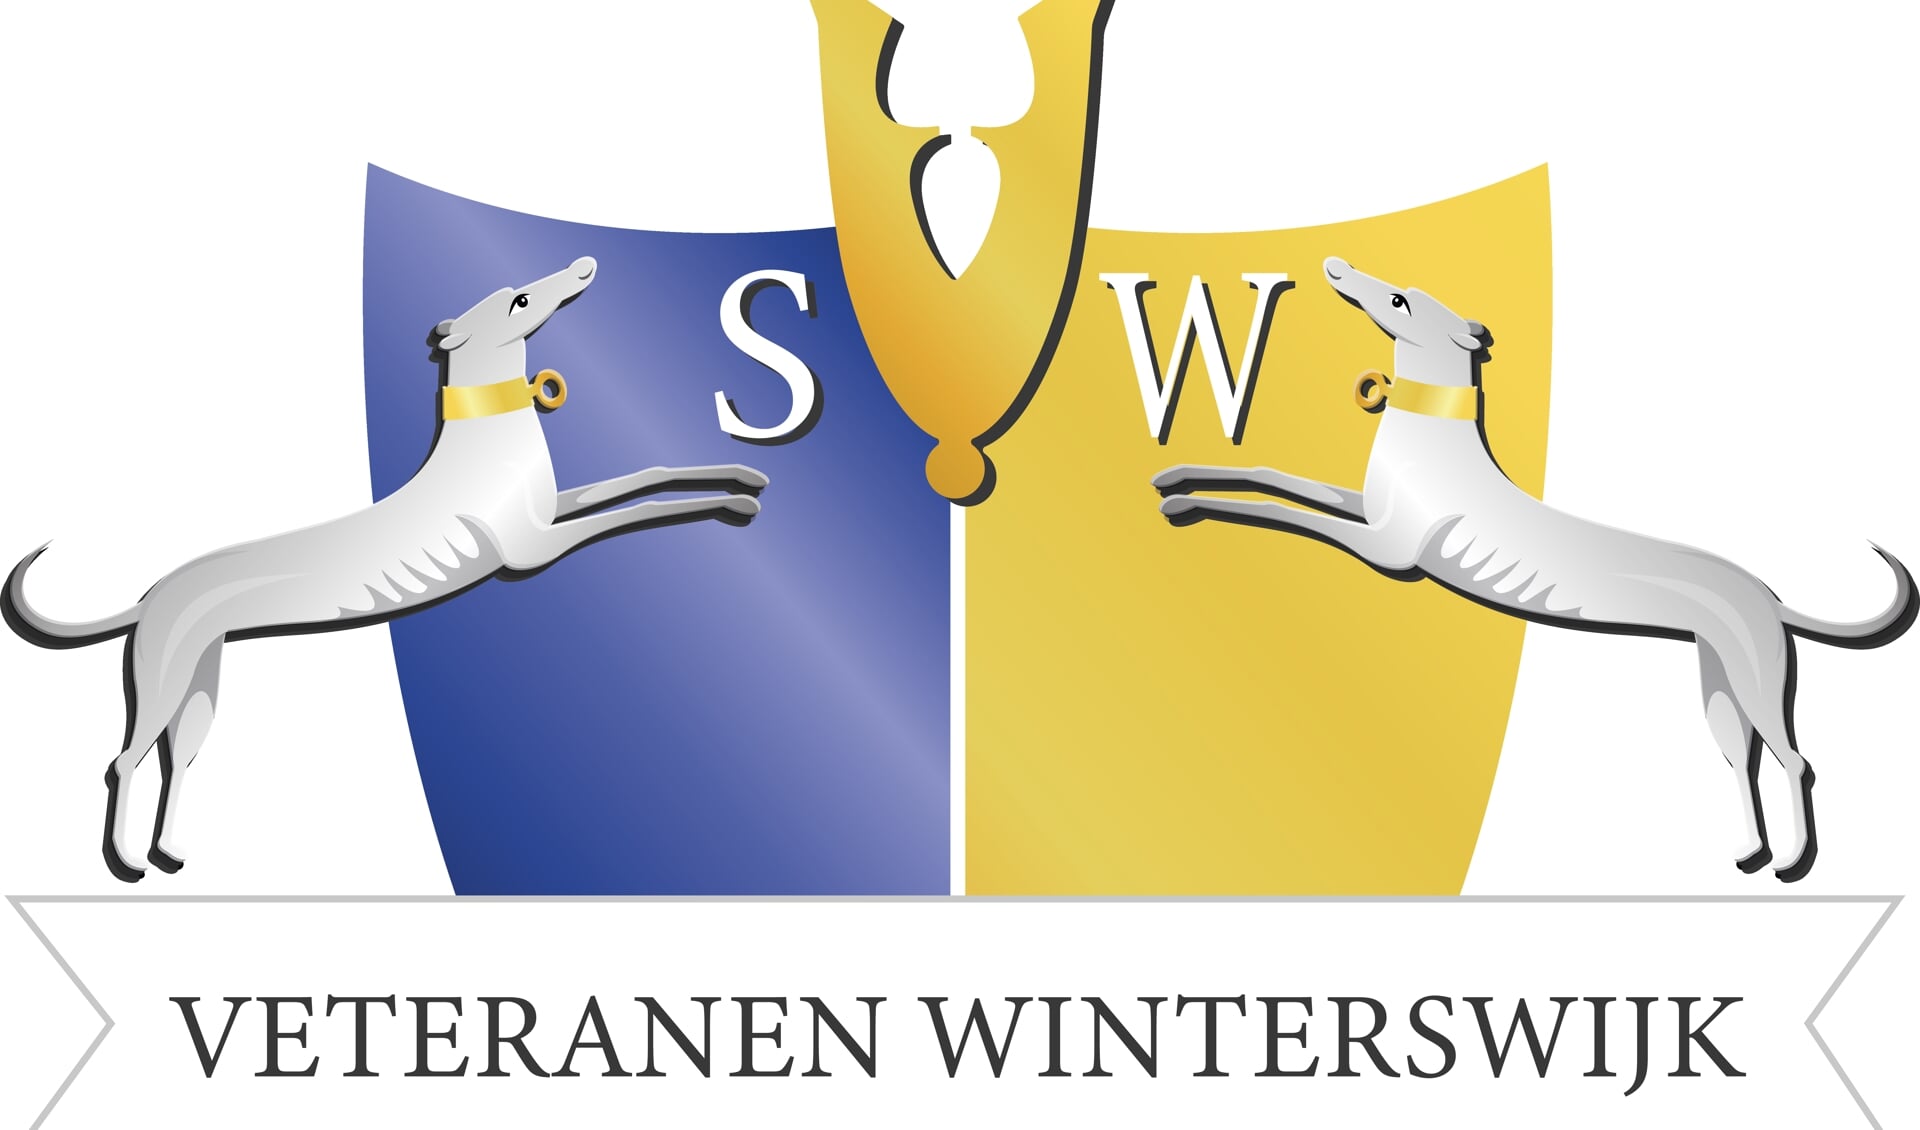 Deze afbeelding is het wapen van de Stichting Veteranen Winterswijk